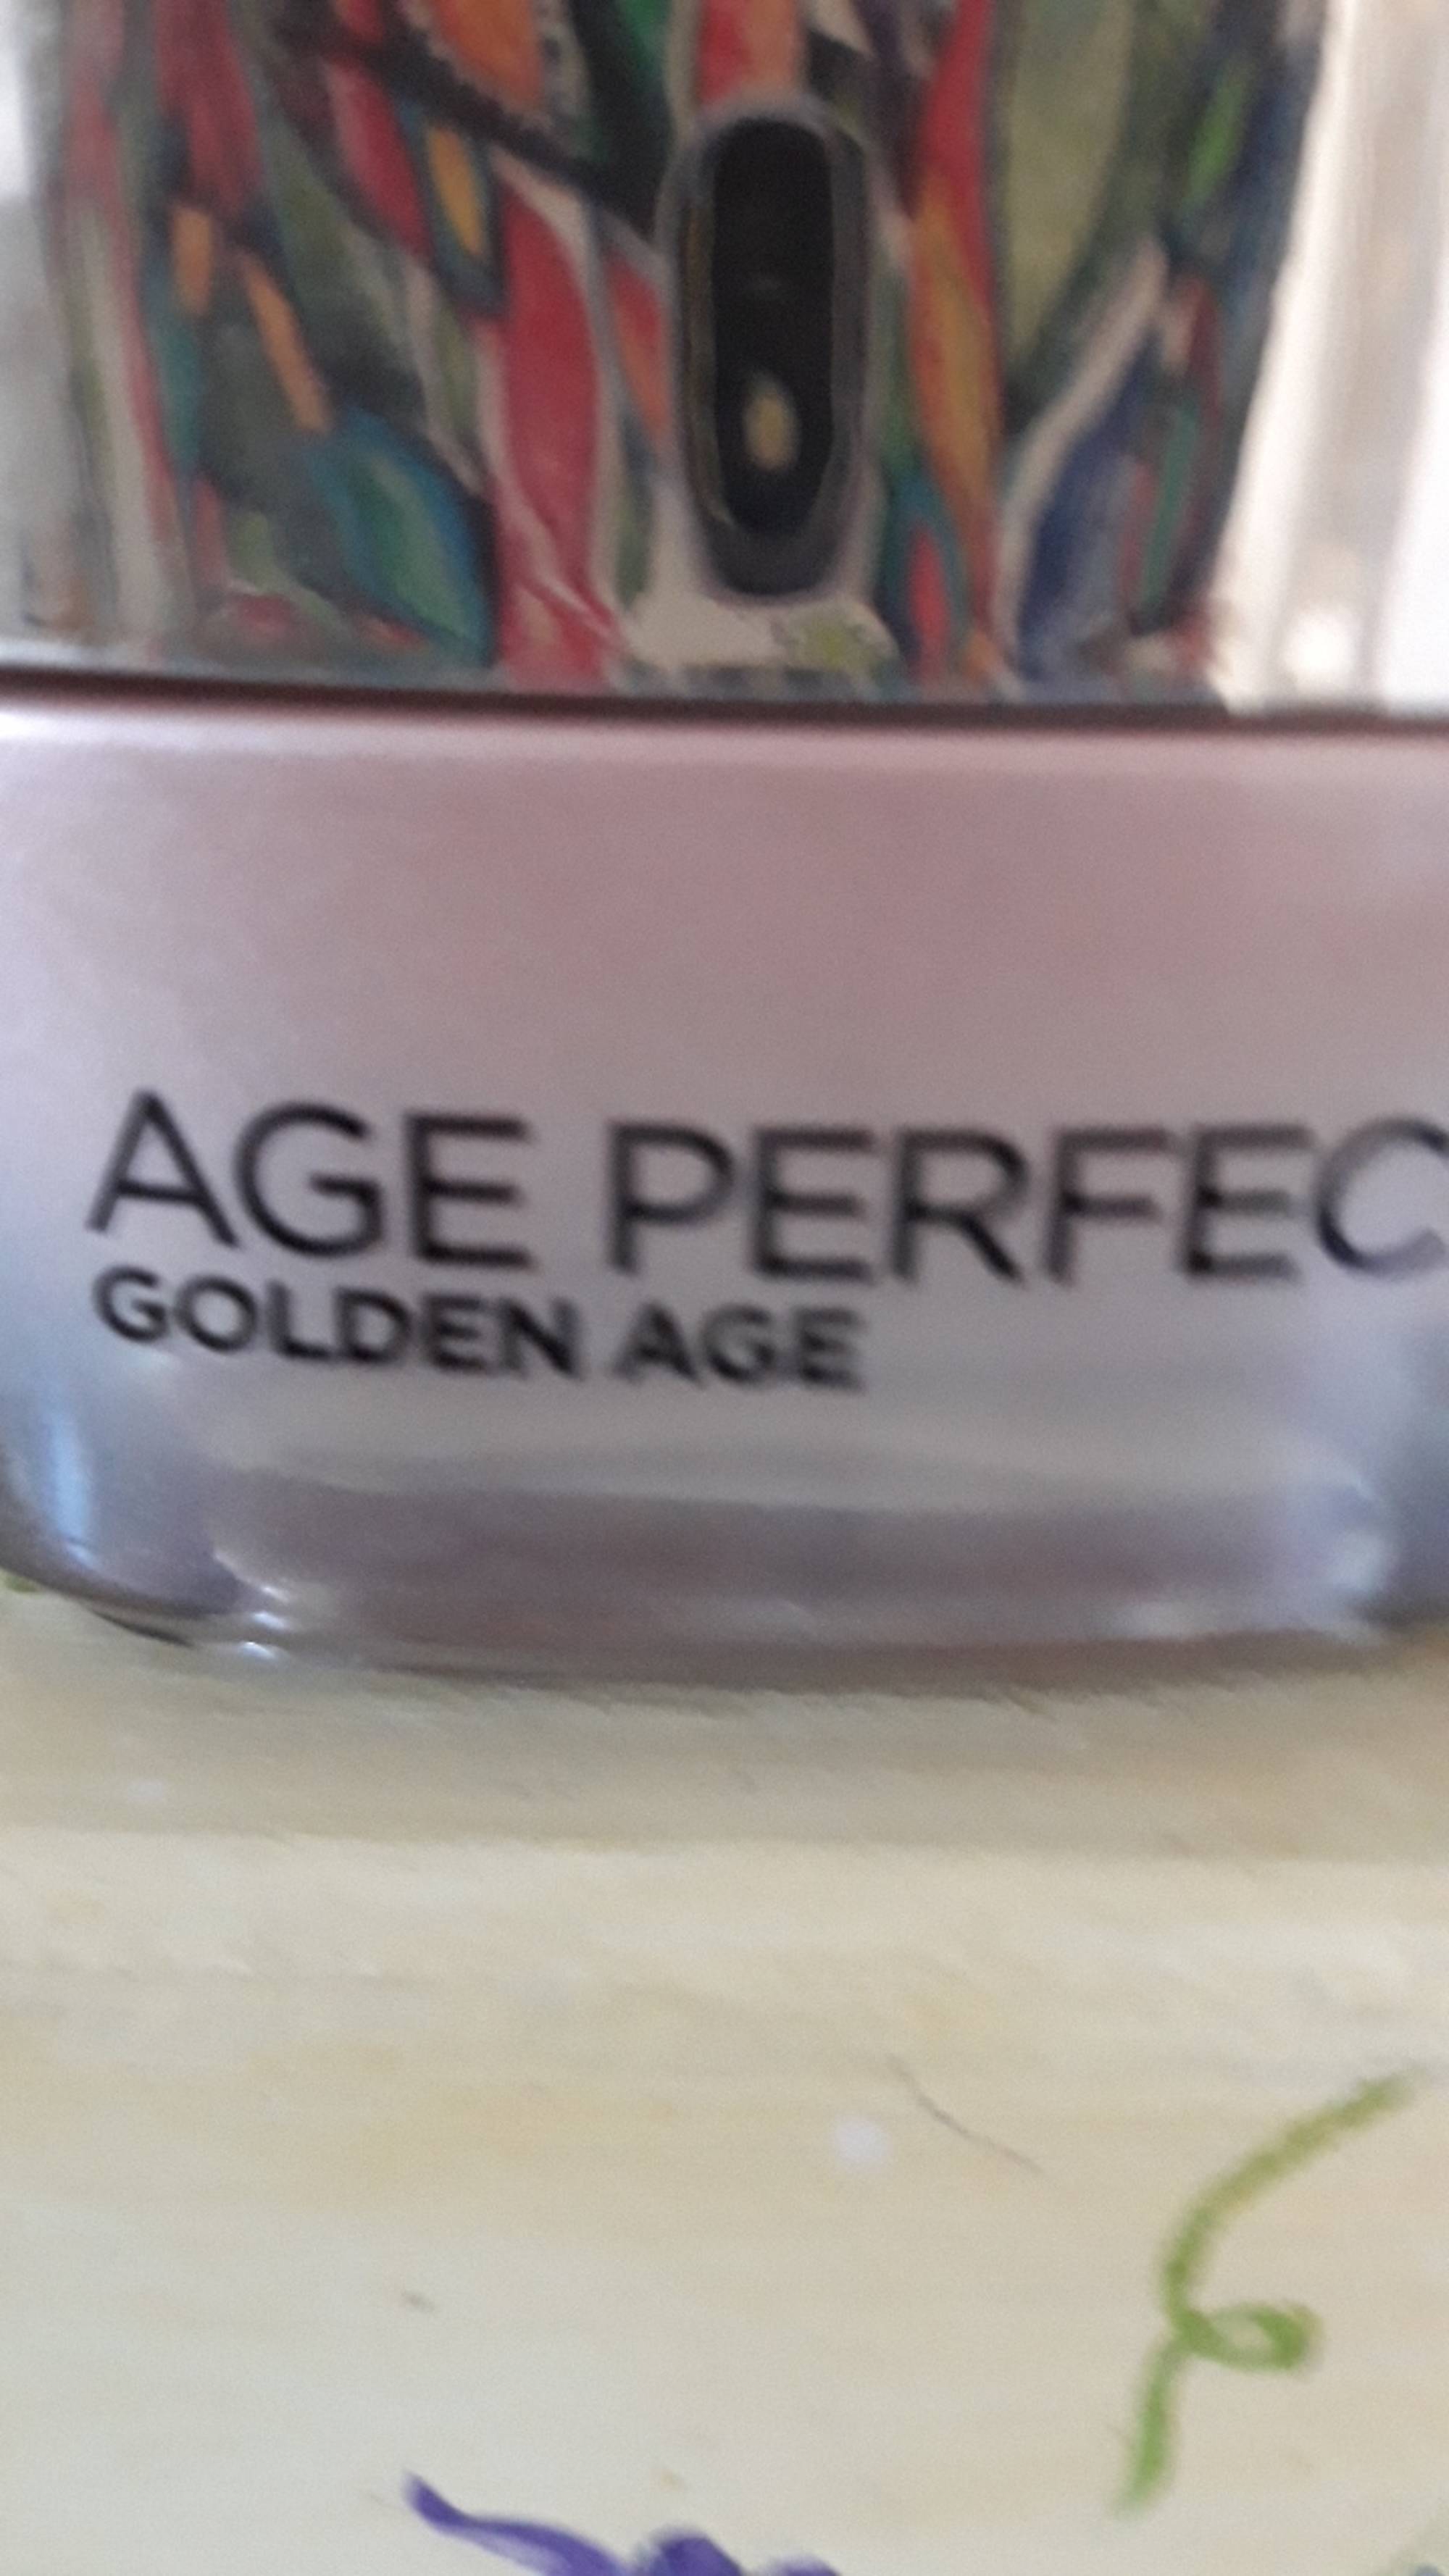 L'ORÉAL - Age perfect